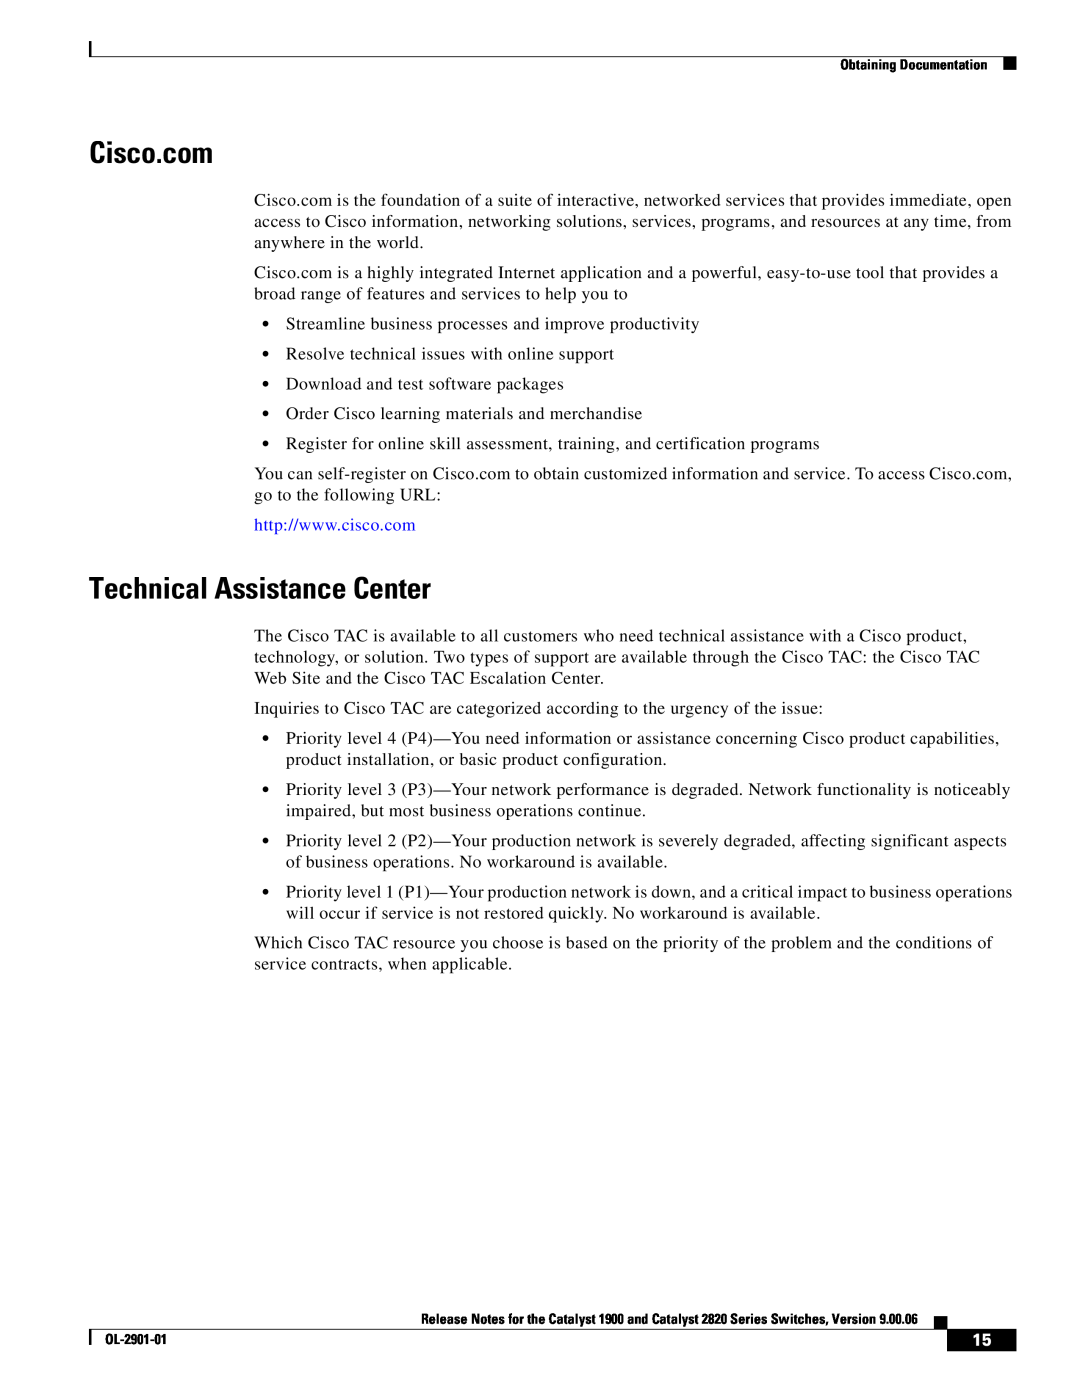 Cisco Systems 2820, 1900 manual Cisco.com, Technical Assistance Center 